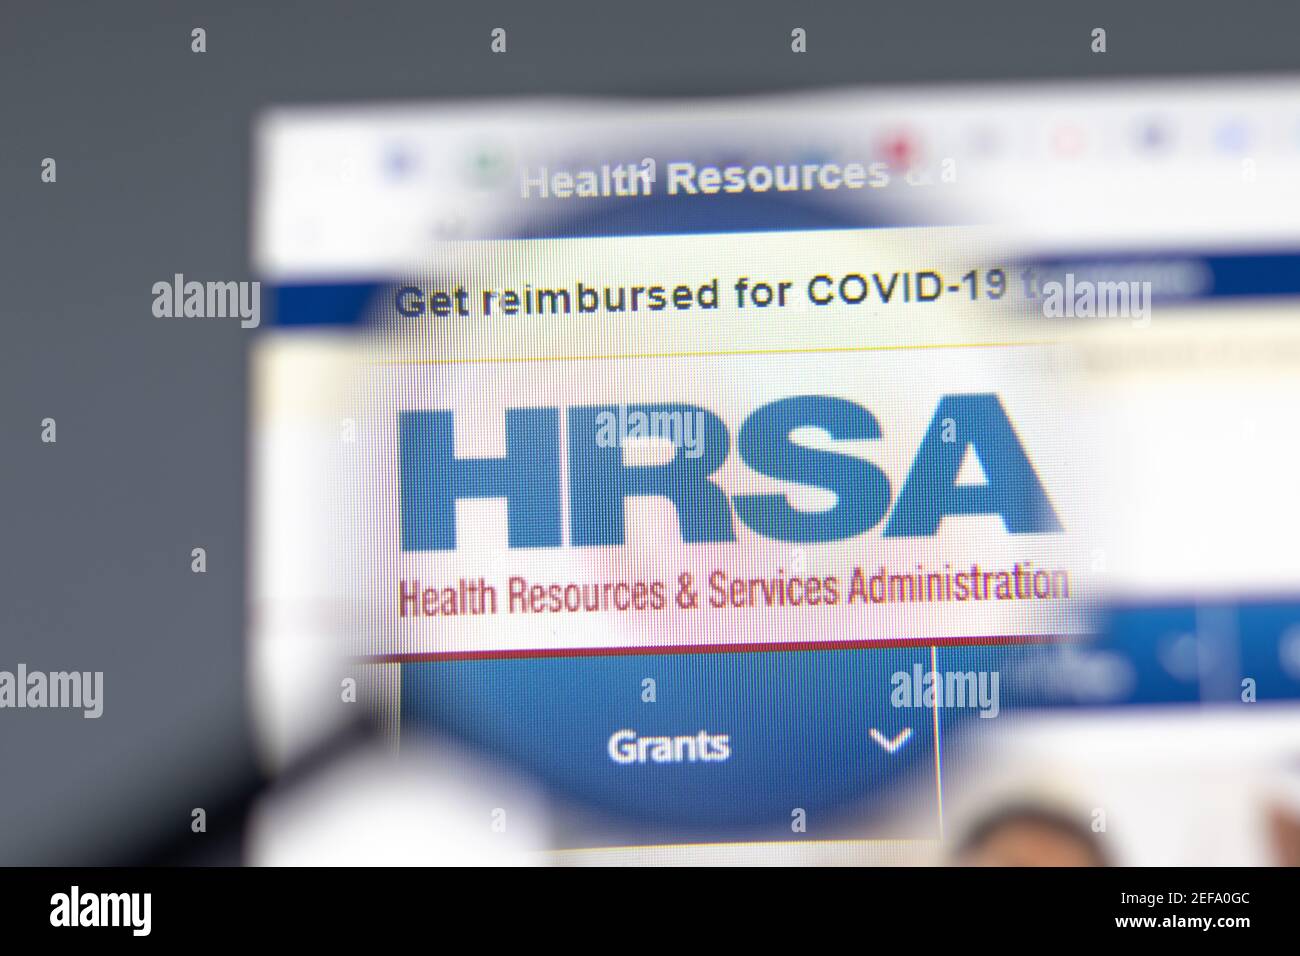 Nueva York, EE.UU. - 15 de febrero de 2021: HRSA Health Resources Services Administration sitio web en el navegador con el logotipo de la empresa, editorial ilustrativa Foto de stock